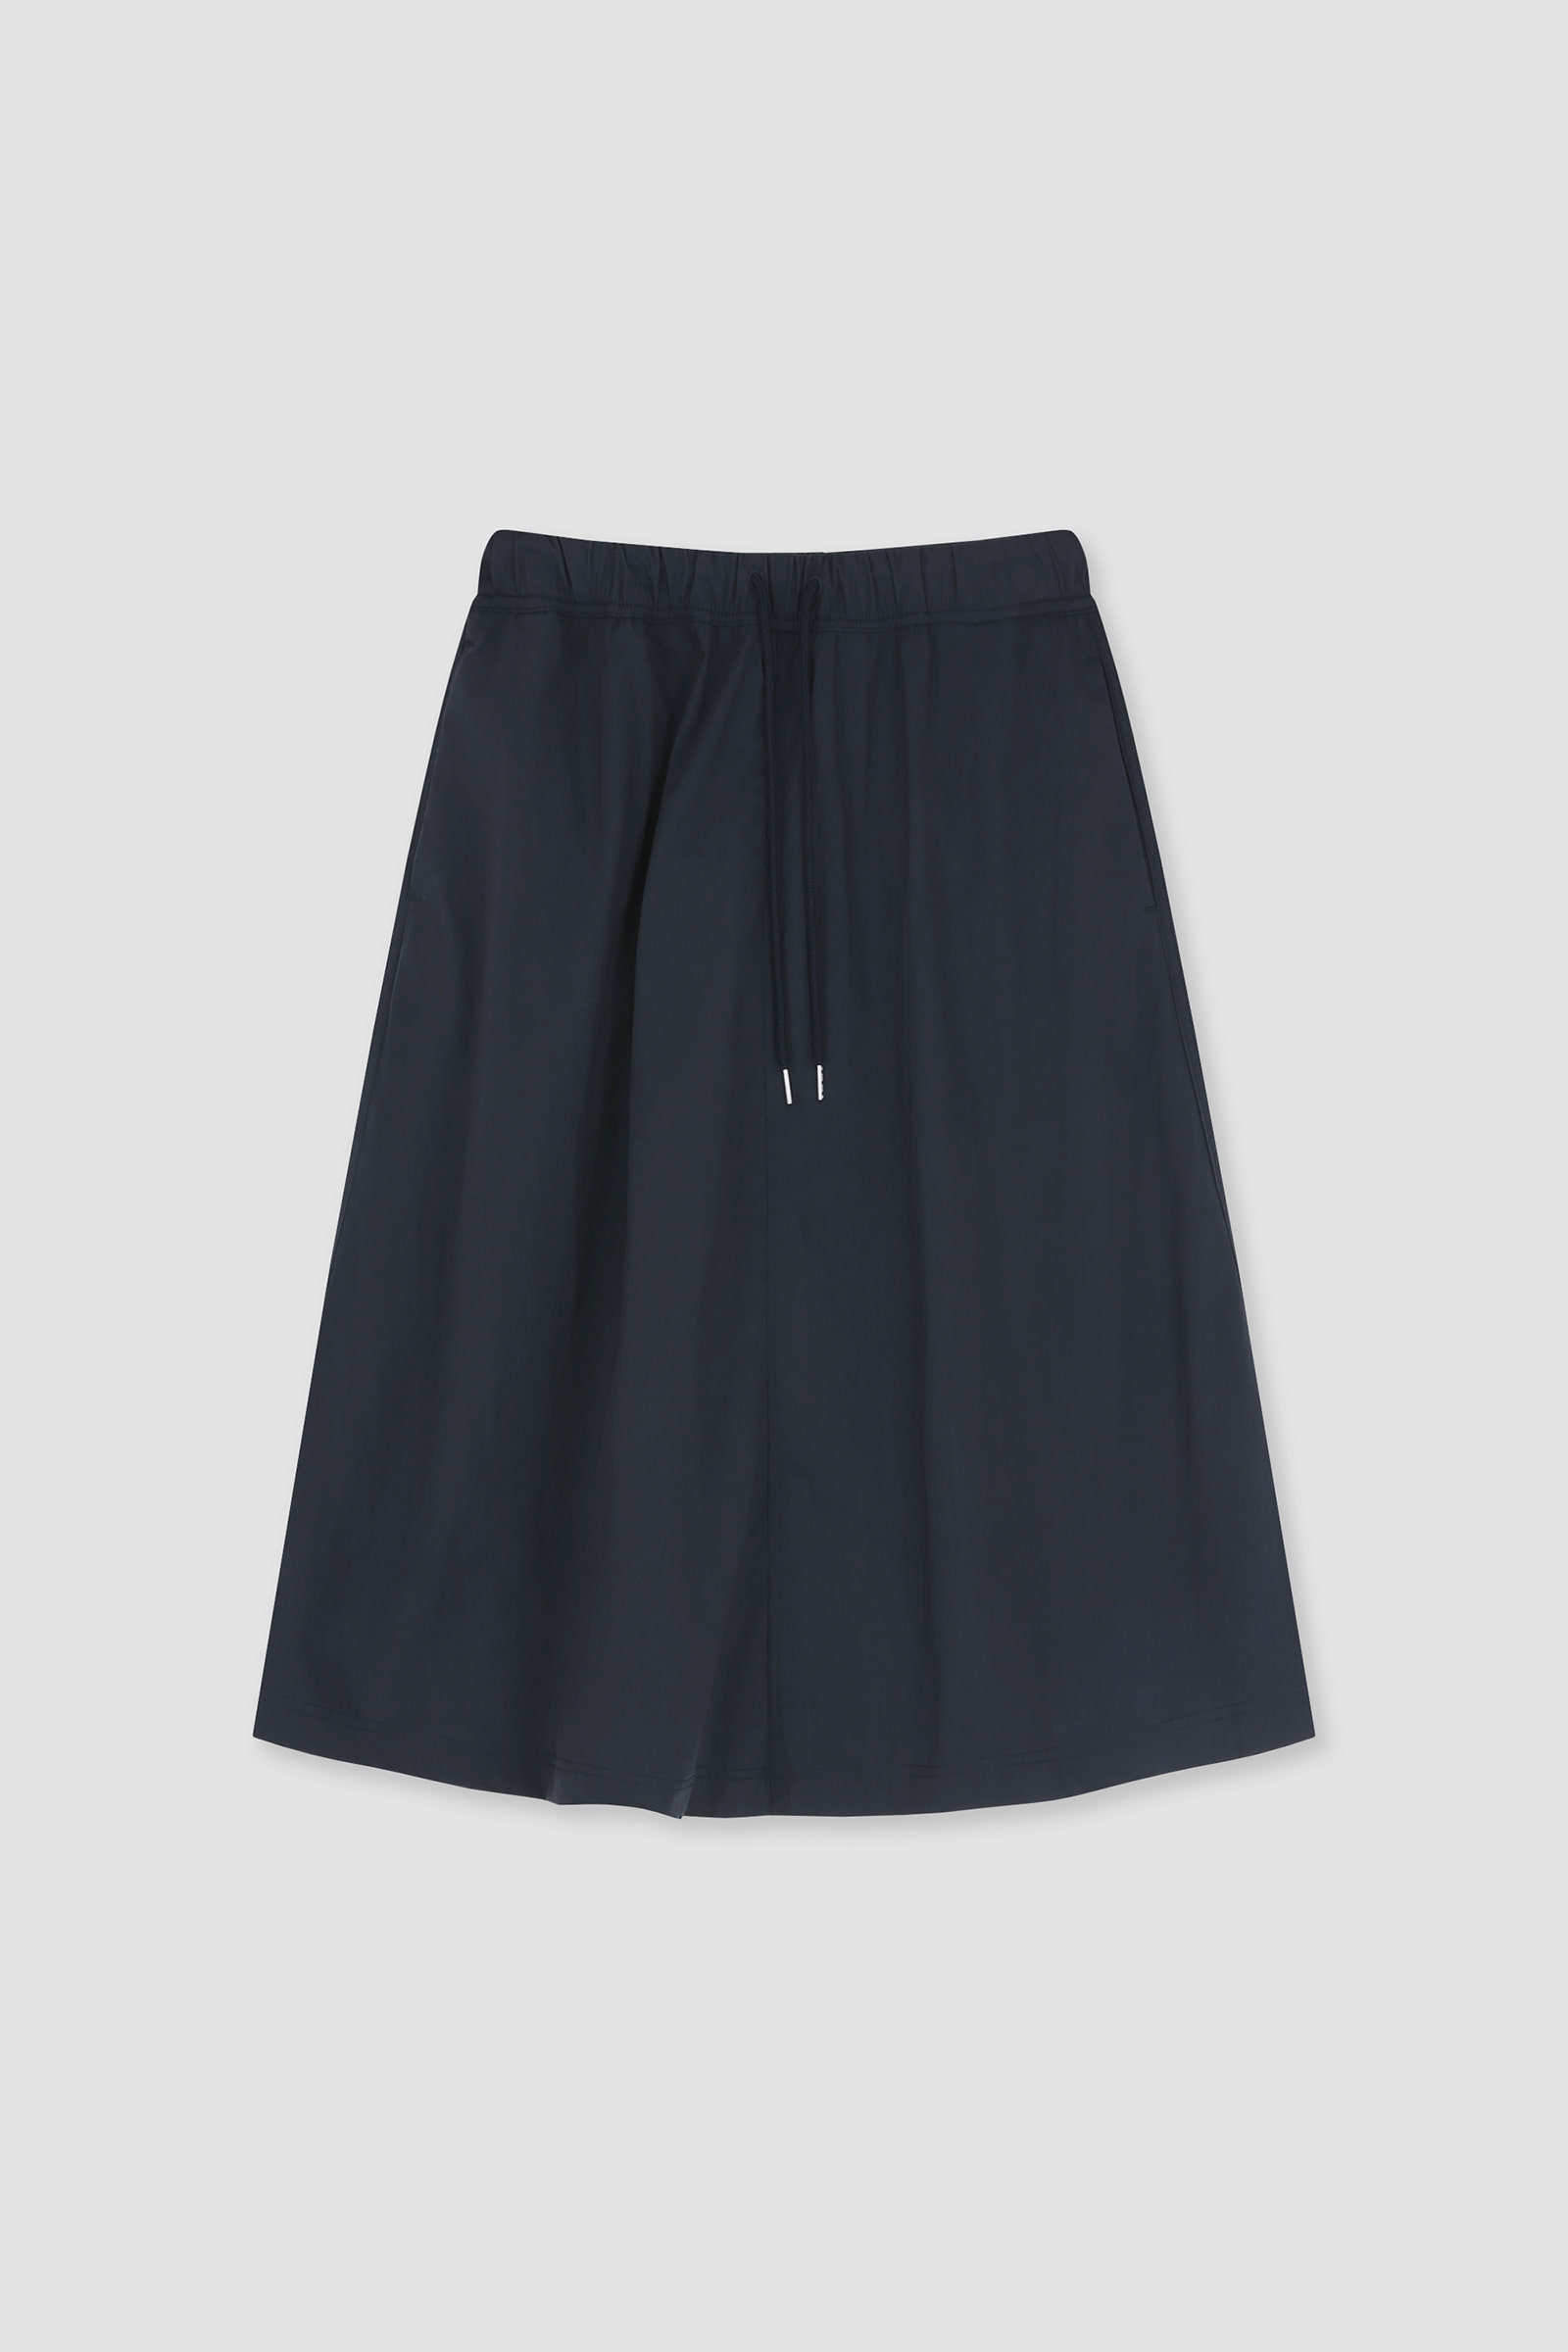 [3rd] Nylon Skirt